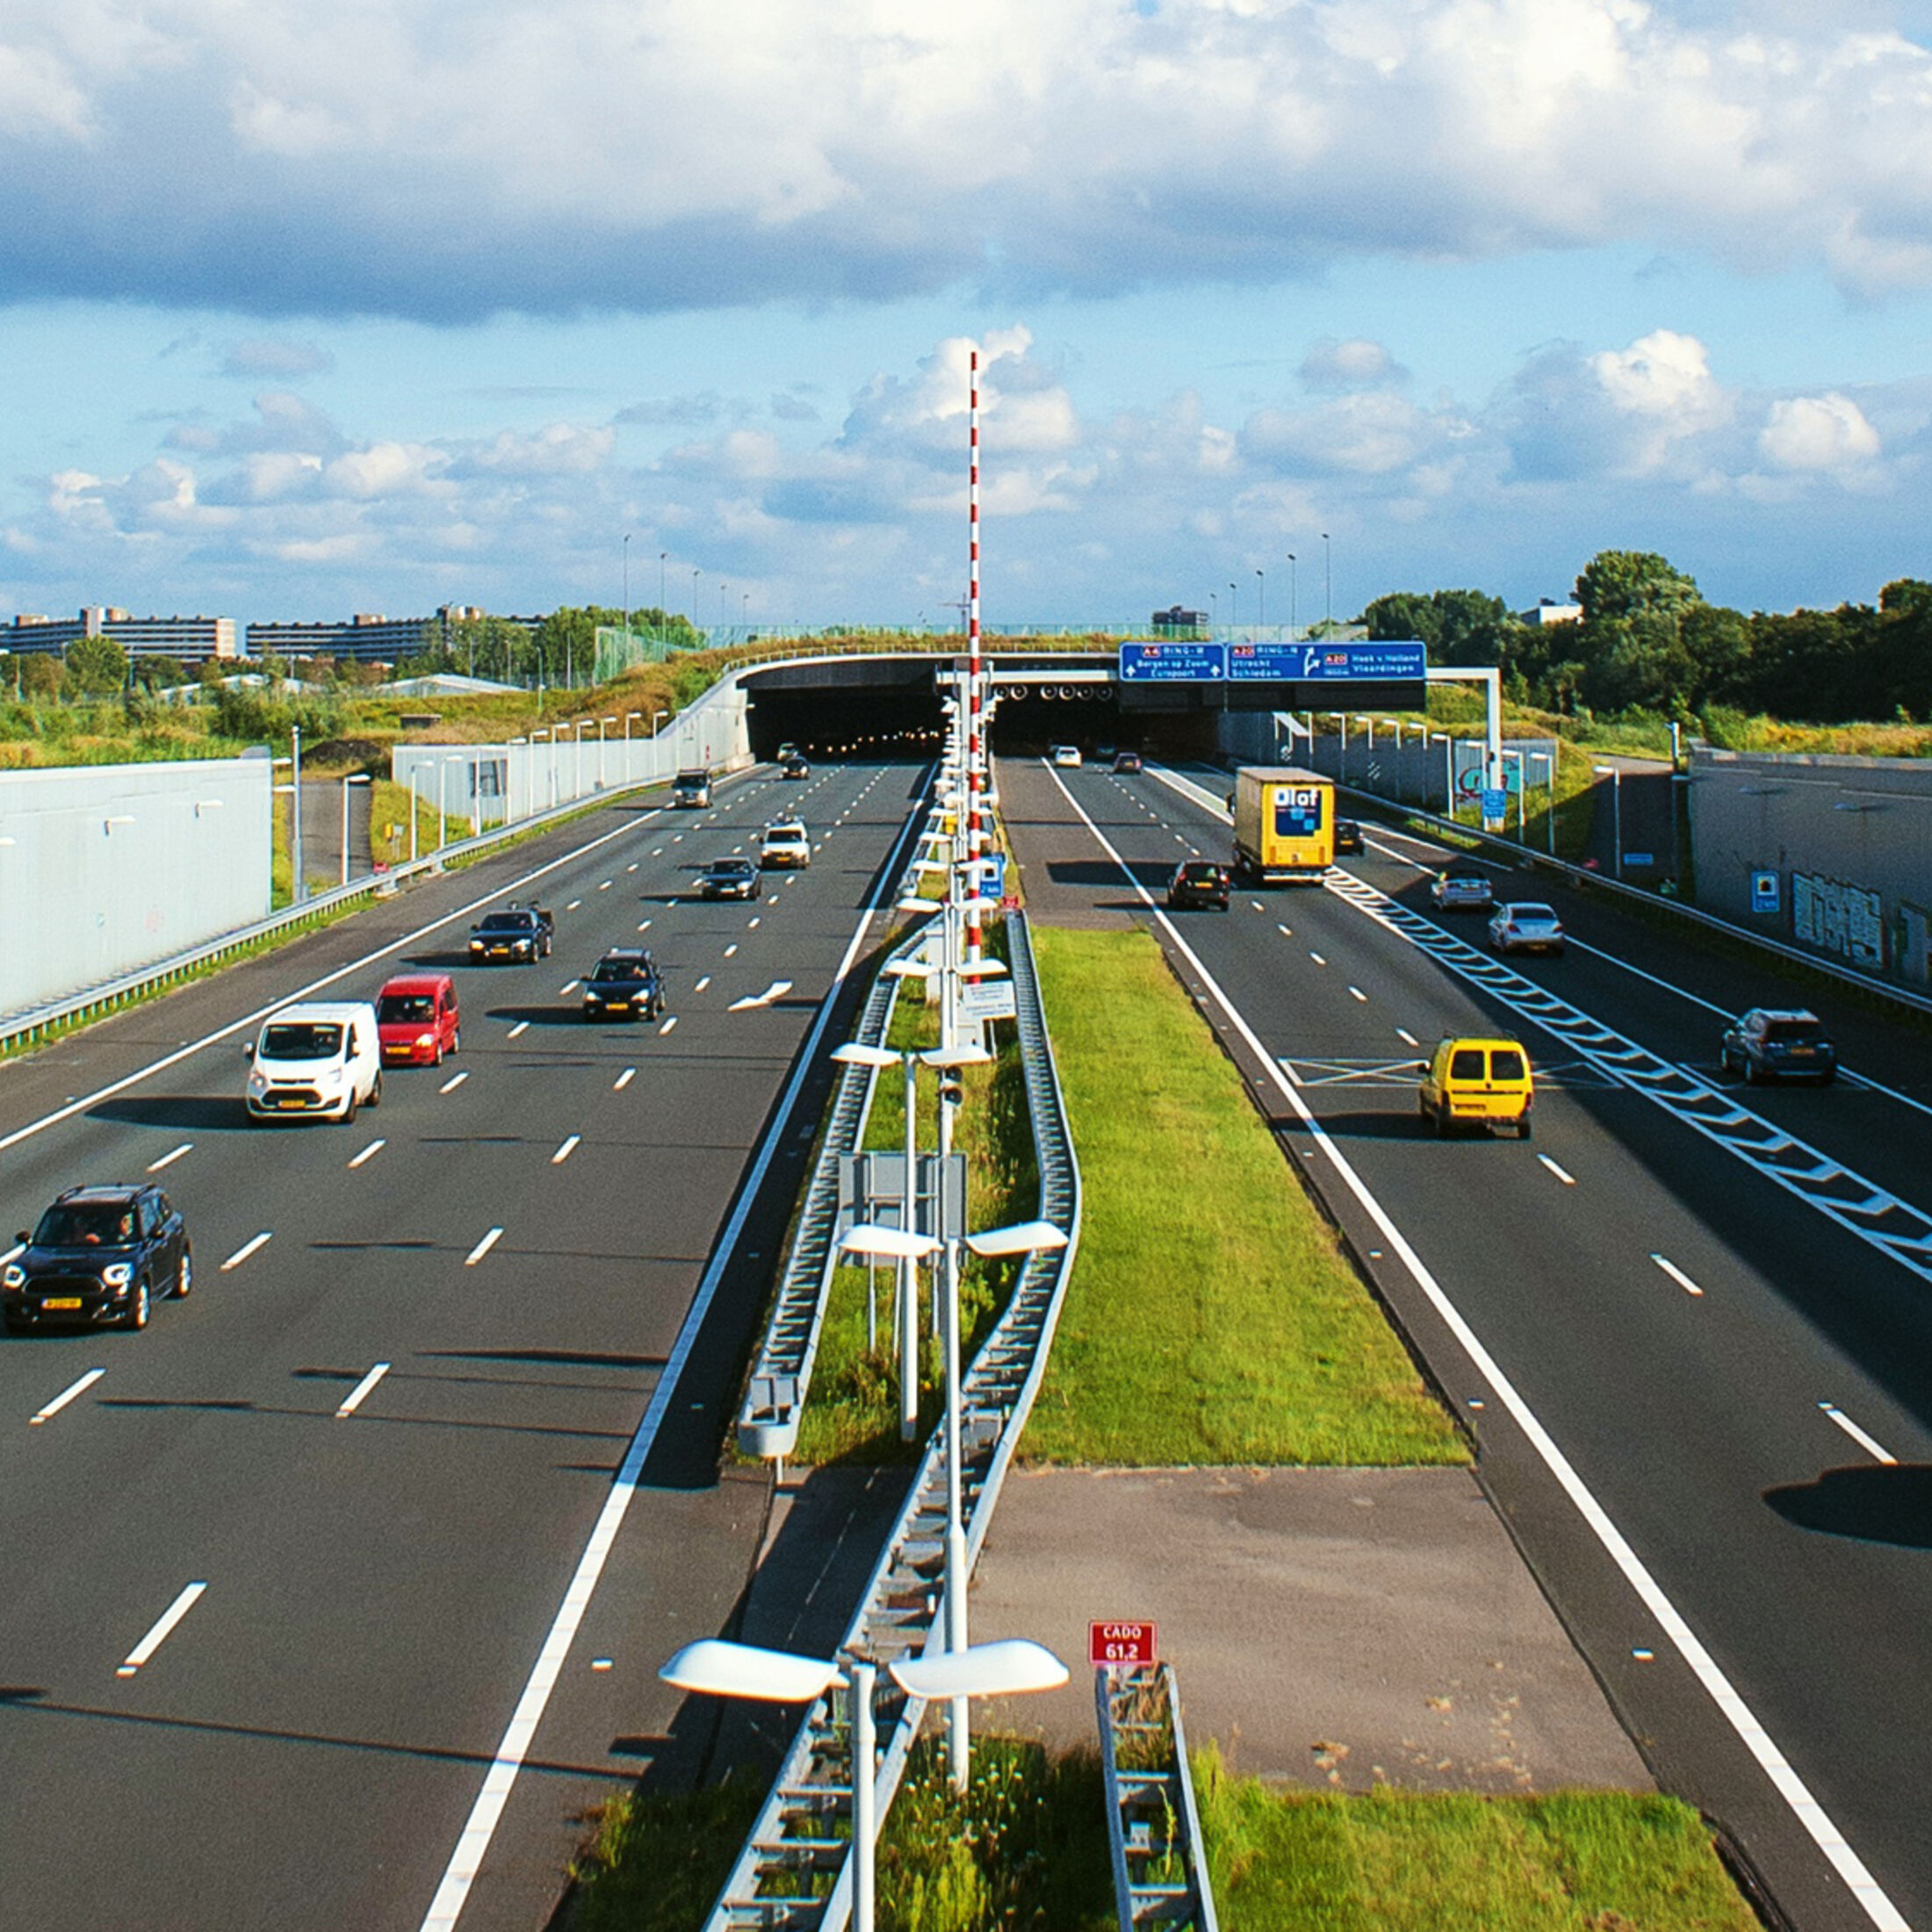 Hohe der Strafen in den Niederlanden für Geschwindigkeitsüberschreitung